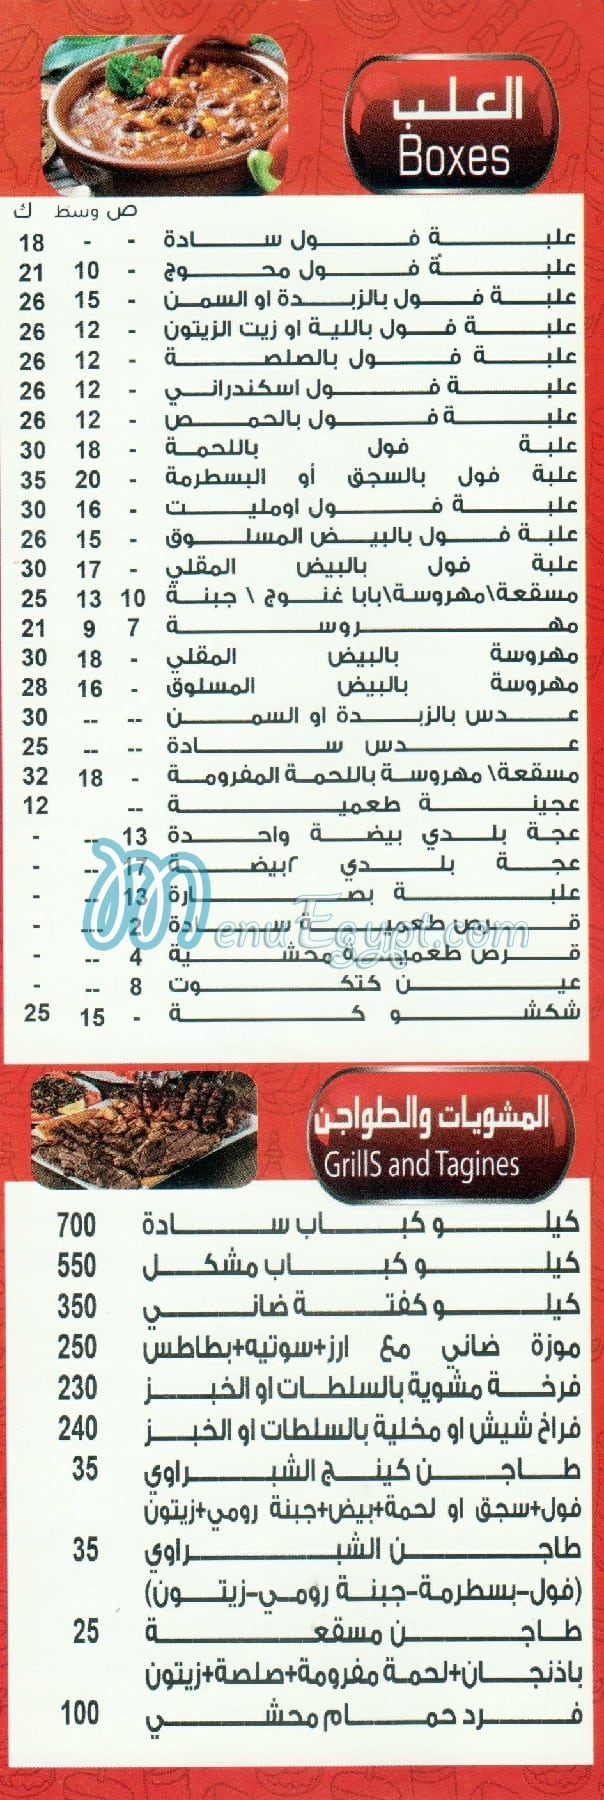 El Shabrawy El Mohandessin menu Egypt